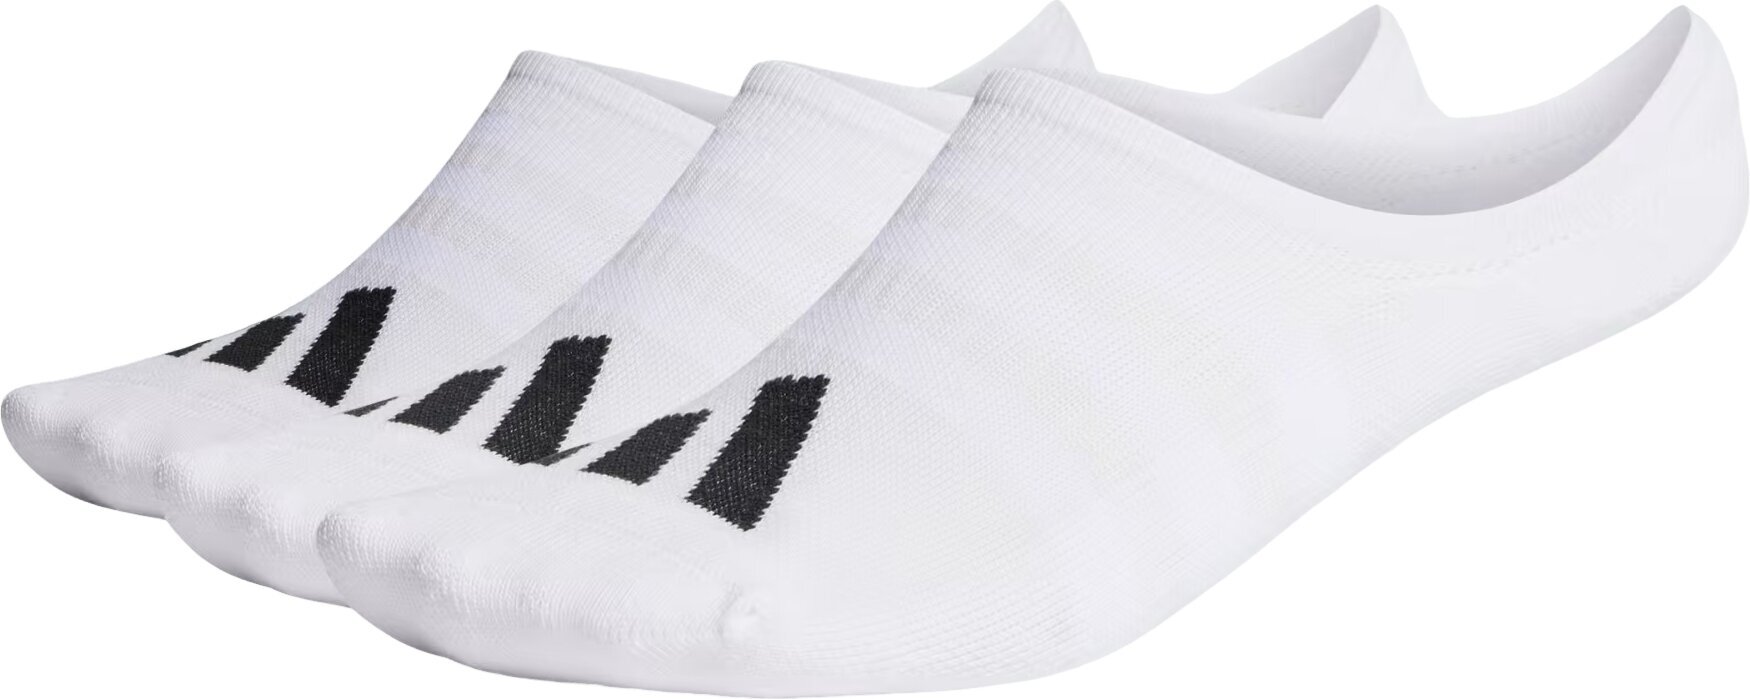 Ponožky Adidas No Show Golf Socks 3-Pairs Ponožky White 40-42